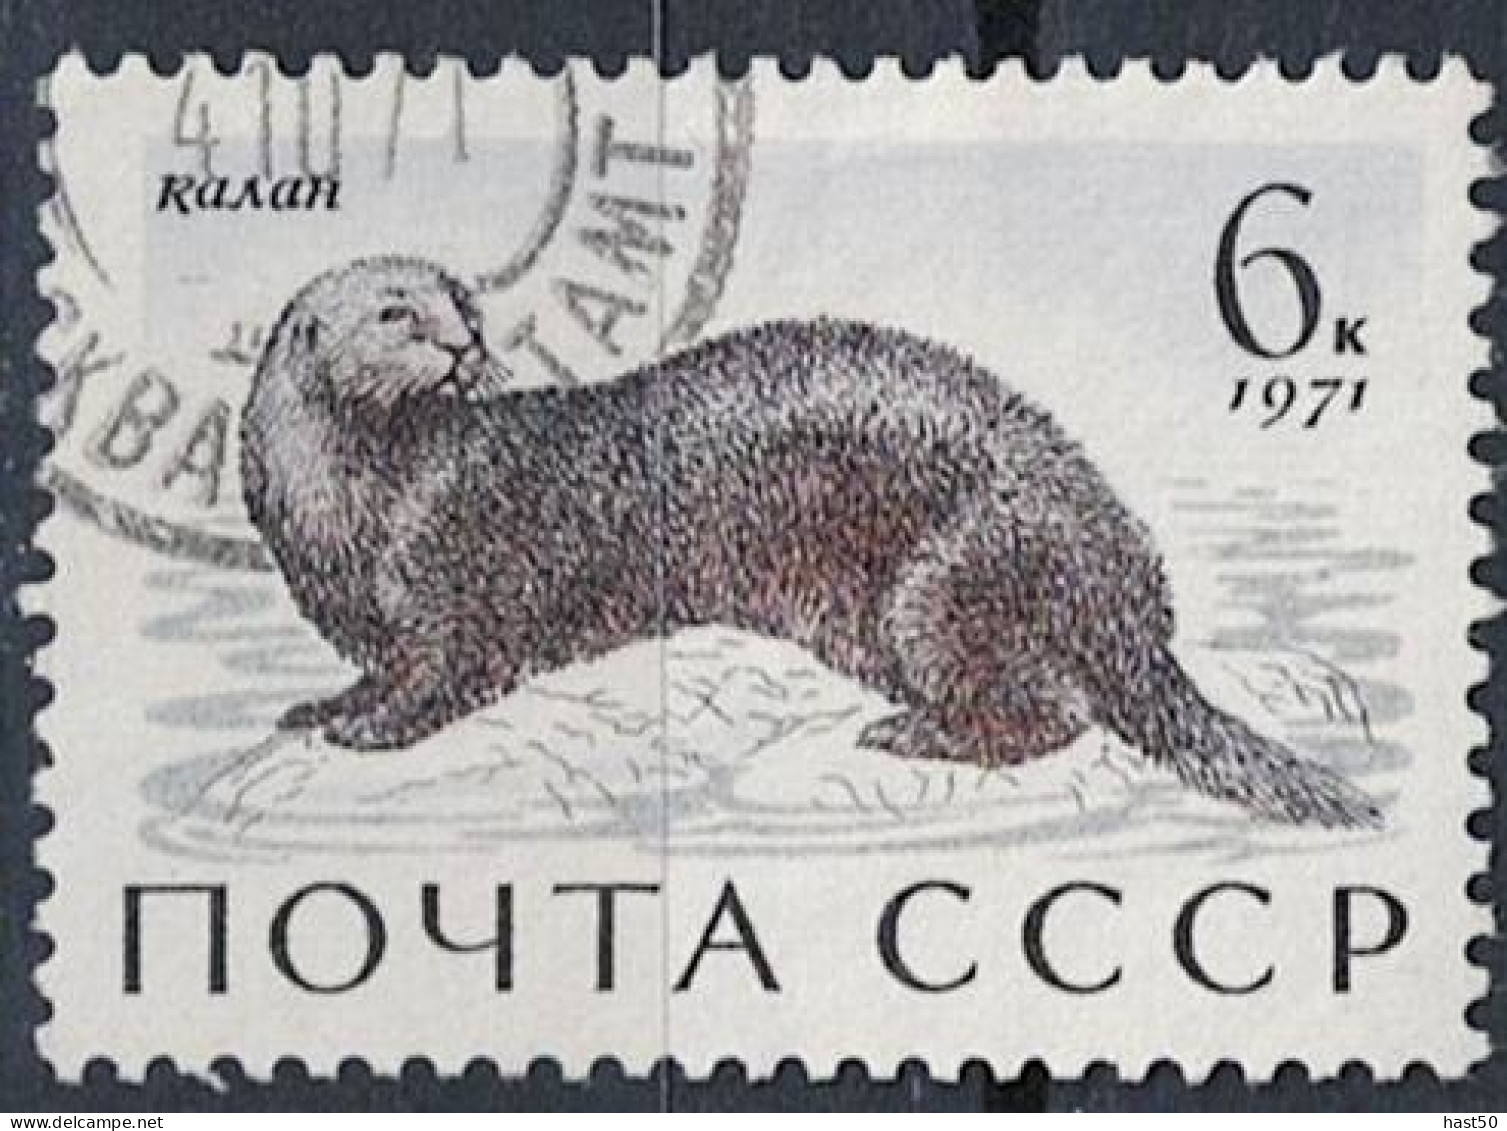 Sowjetunion UdSSR - Seeotter (Enhydra Lutris) (MiNr. 3914) 1971 - Gest Used Obl - Usados